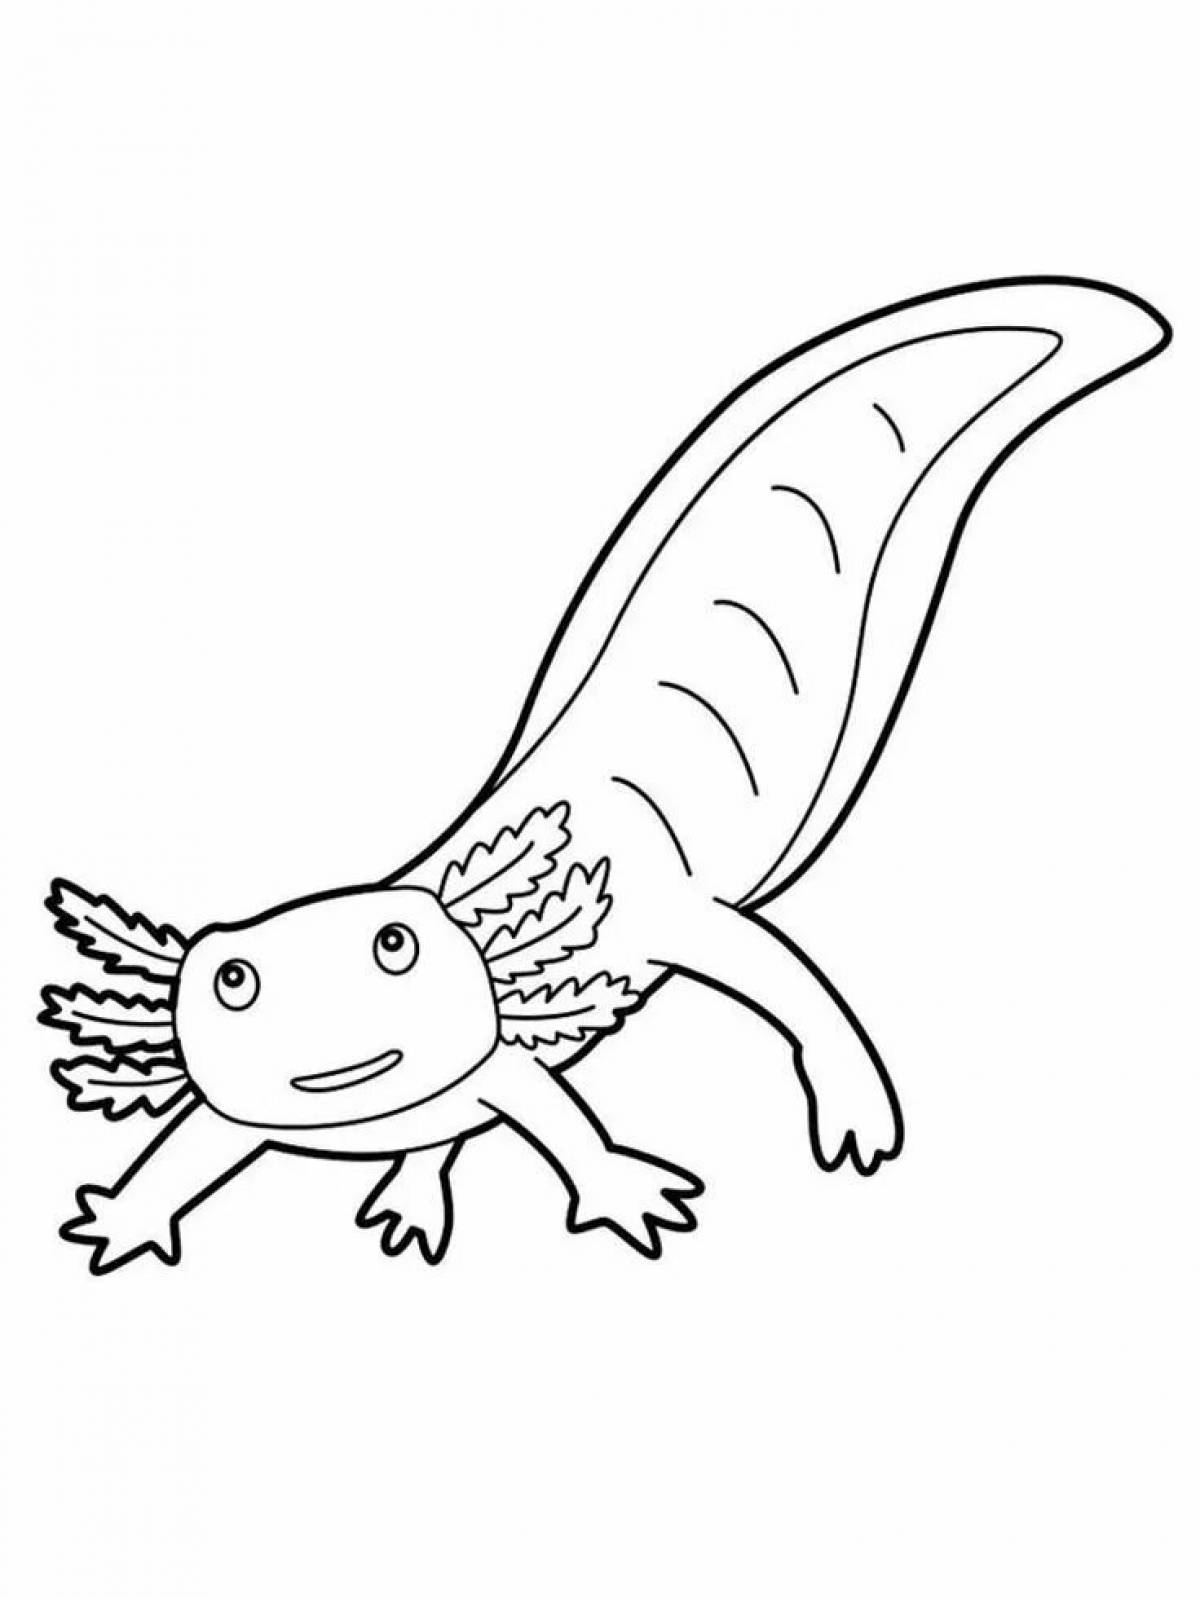 Attractive axolotl coloring